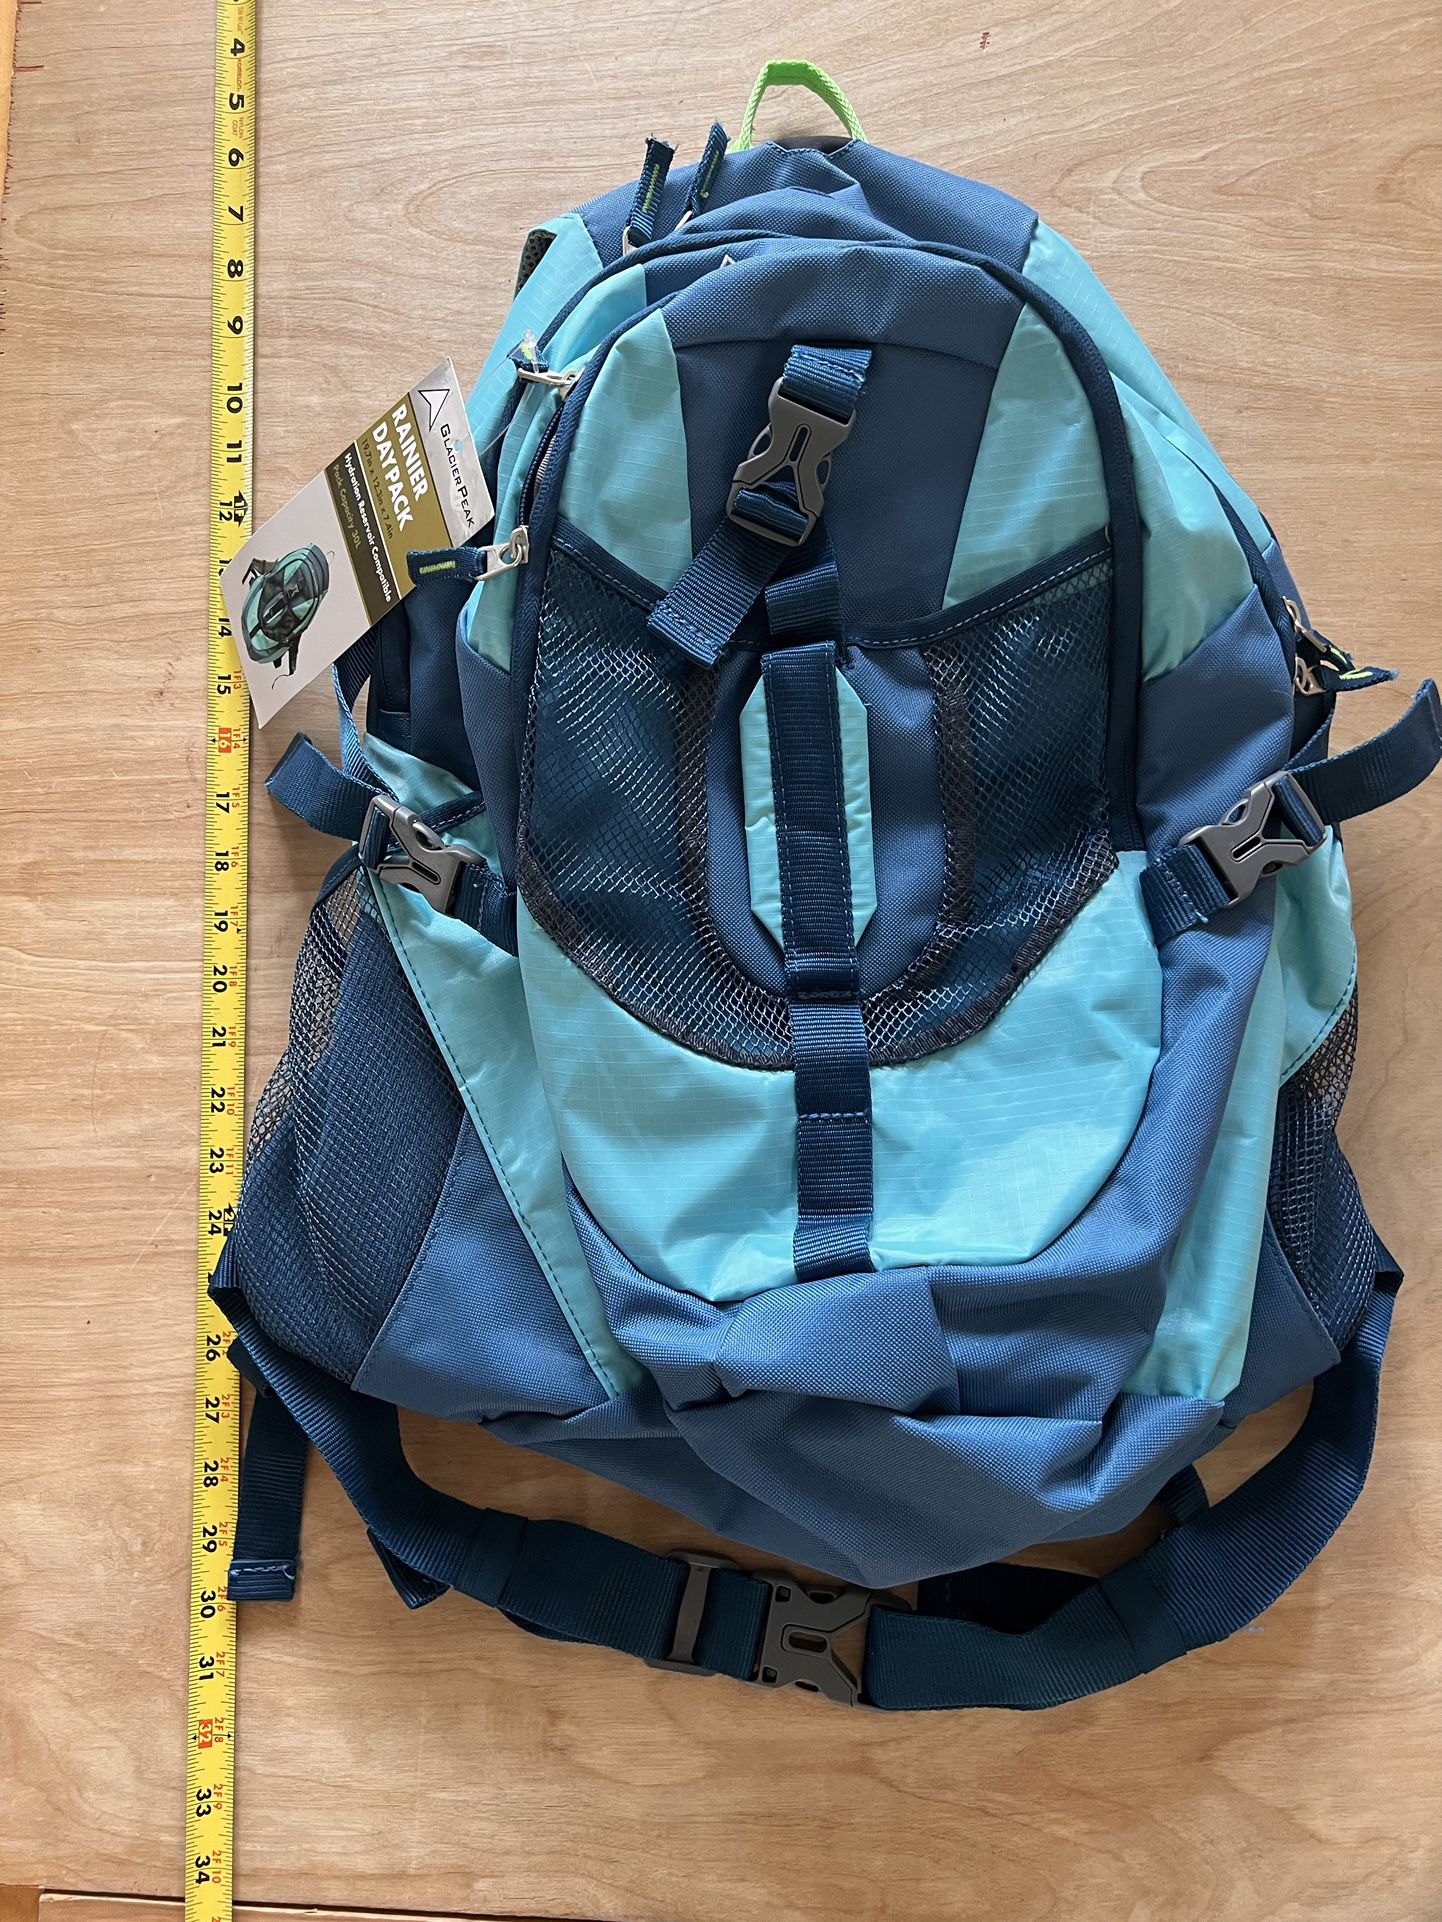 Glacier Peak Raineer Day Pack, Backpack, 30 L Capacity, New